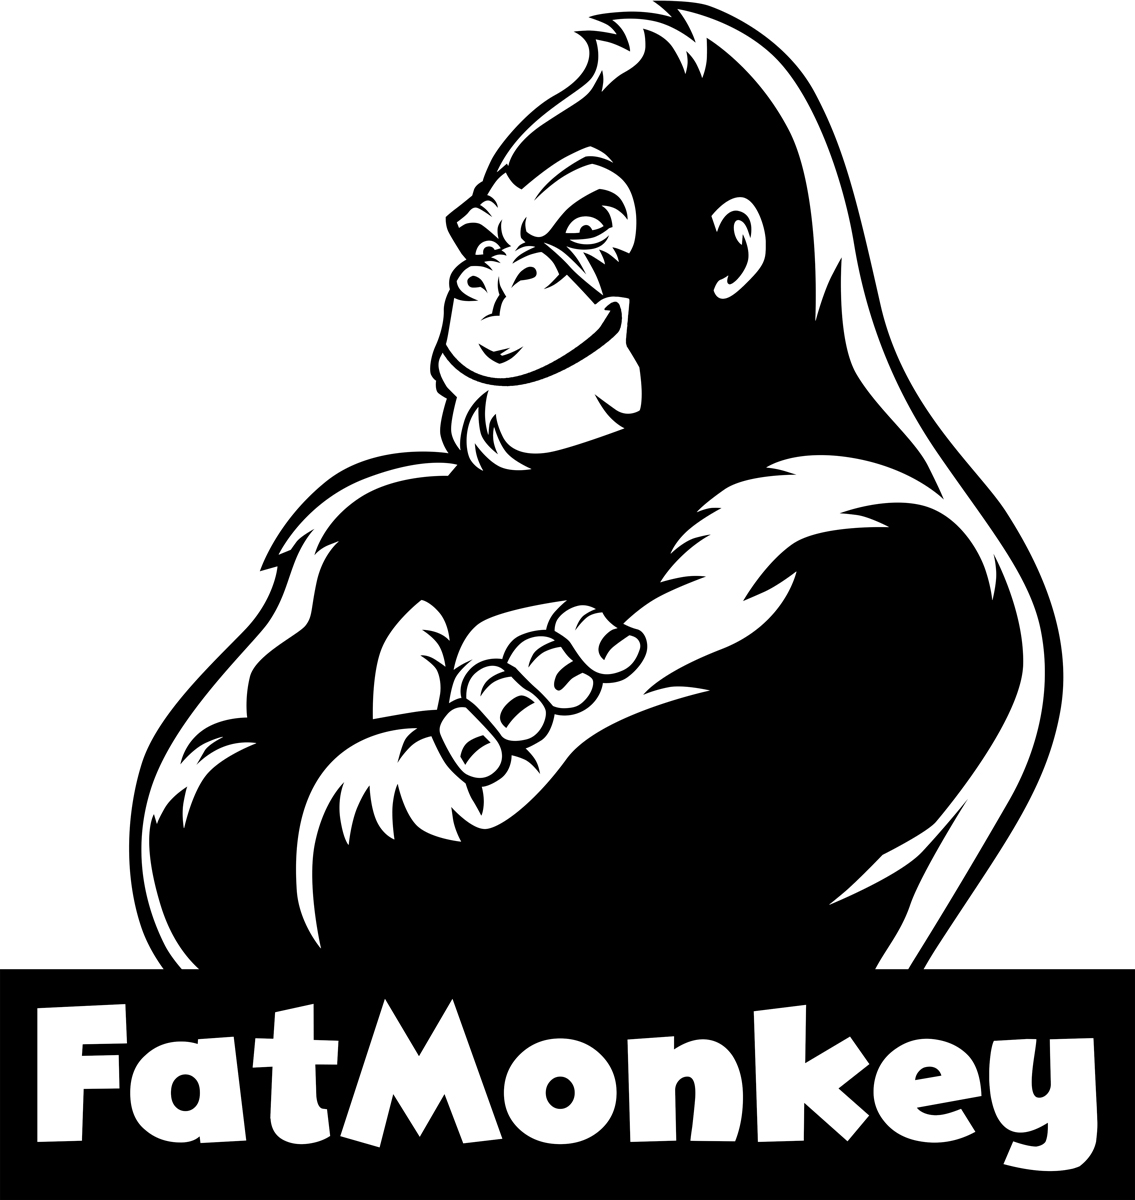 FatMonkey in Essen